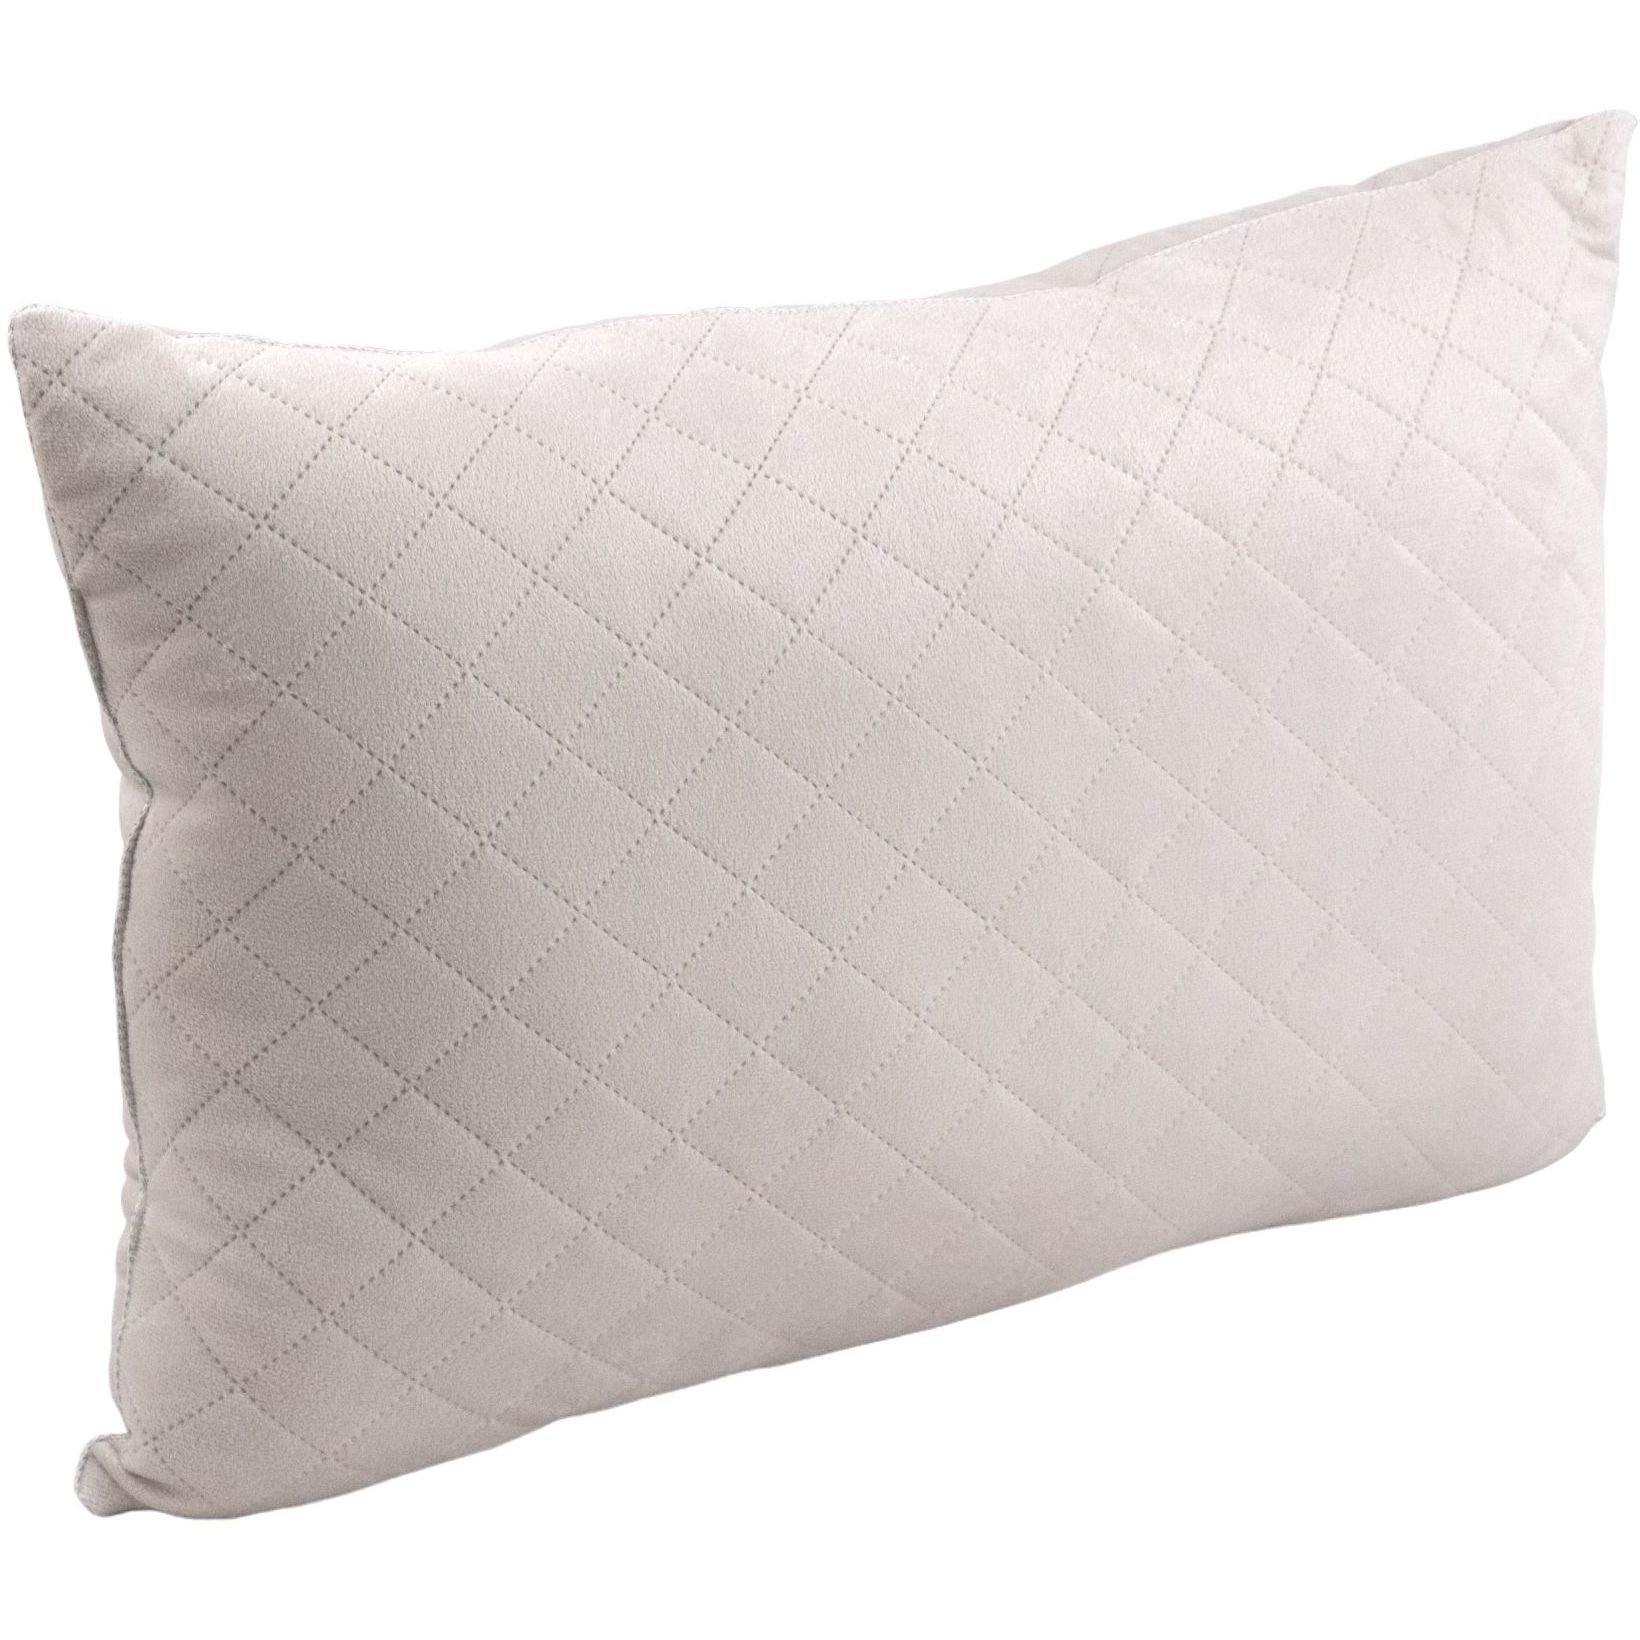 Набор силиконовый Руно Soft Pearl, бежевый: одеяло, 205х140 см + подушка, 50х70 см (924.55_Soft Pearl) - фото 2